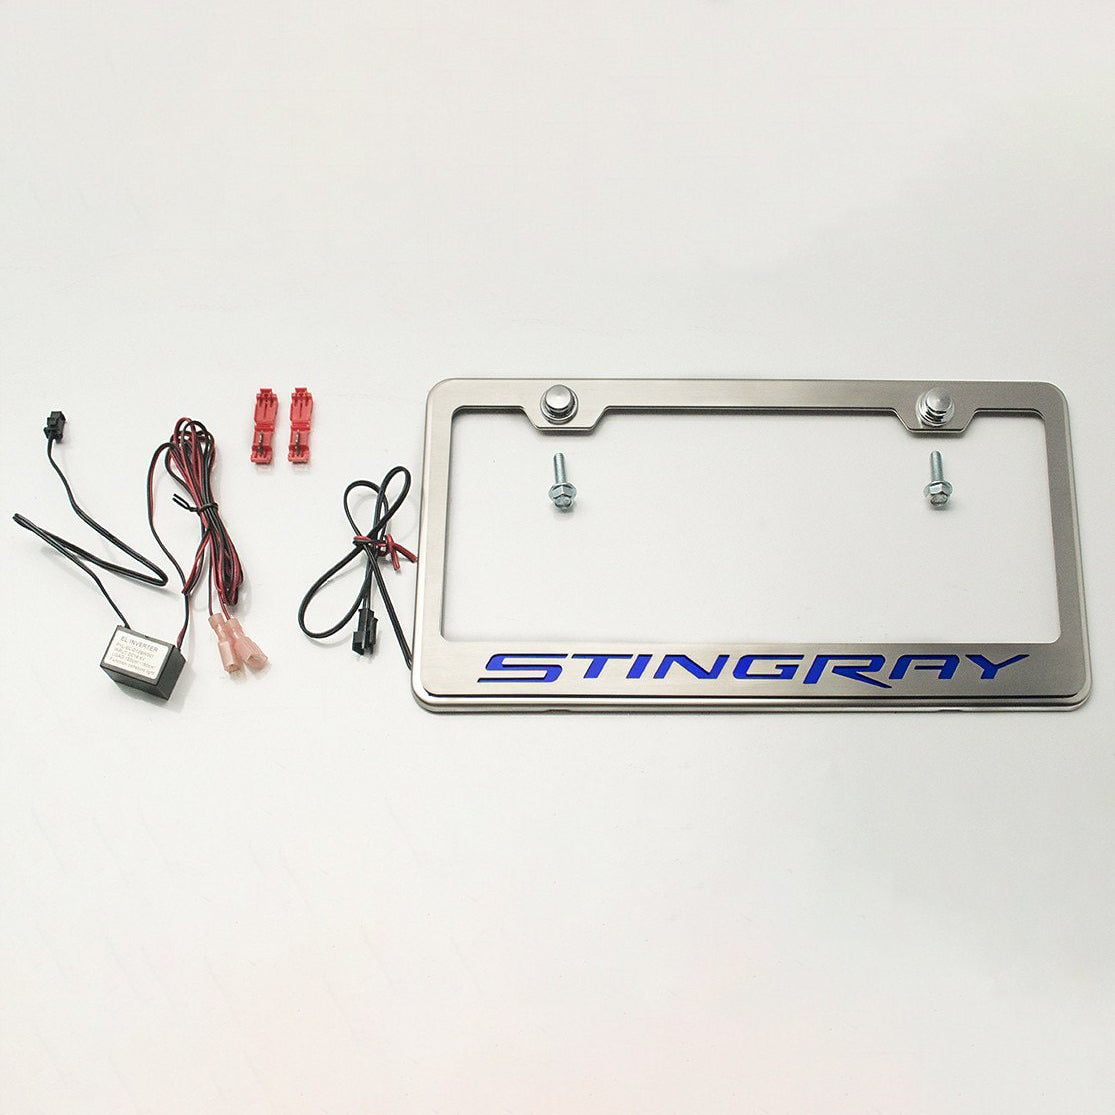 2014-2019 C7 Corvette - License Plate Frame STINGRAY Lettering  - Stainless Steel - LED